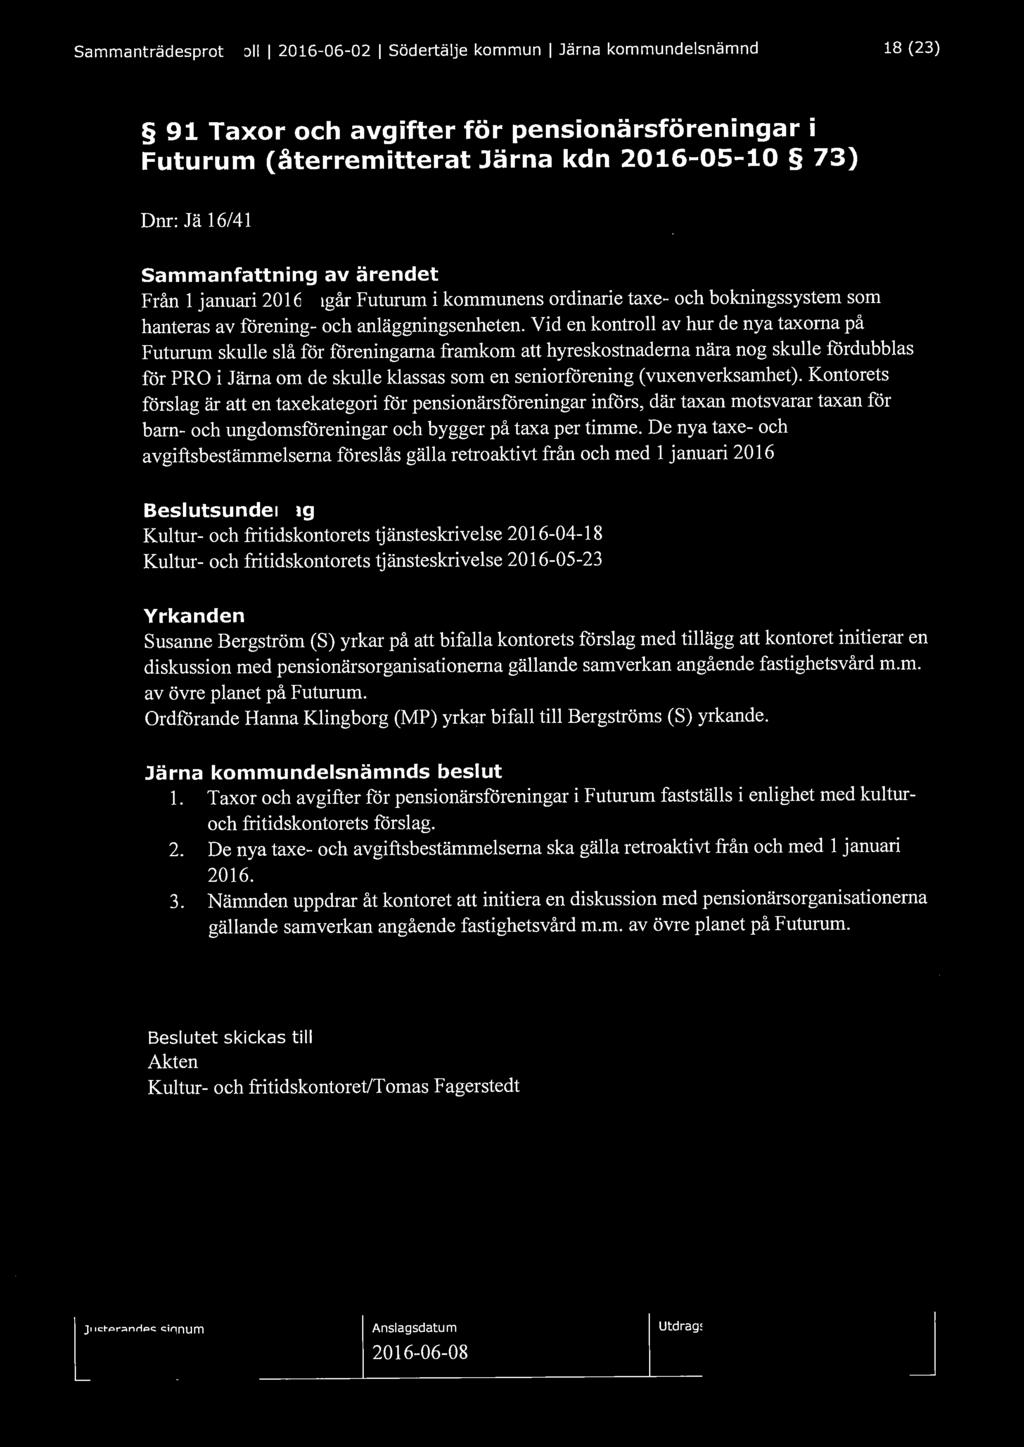 Sammanträdesprotokoll l 2016-06-02 l Södertälje kommun l Järna kommundelsnämnd 18 (23) 91 Taxor och avgifter för pensionärsföreningar i Futurum (återremitterat Järna kdn 2016-05-10 73) Dnr: Jä 16/41